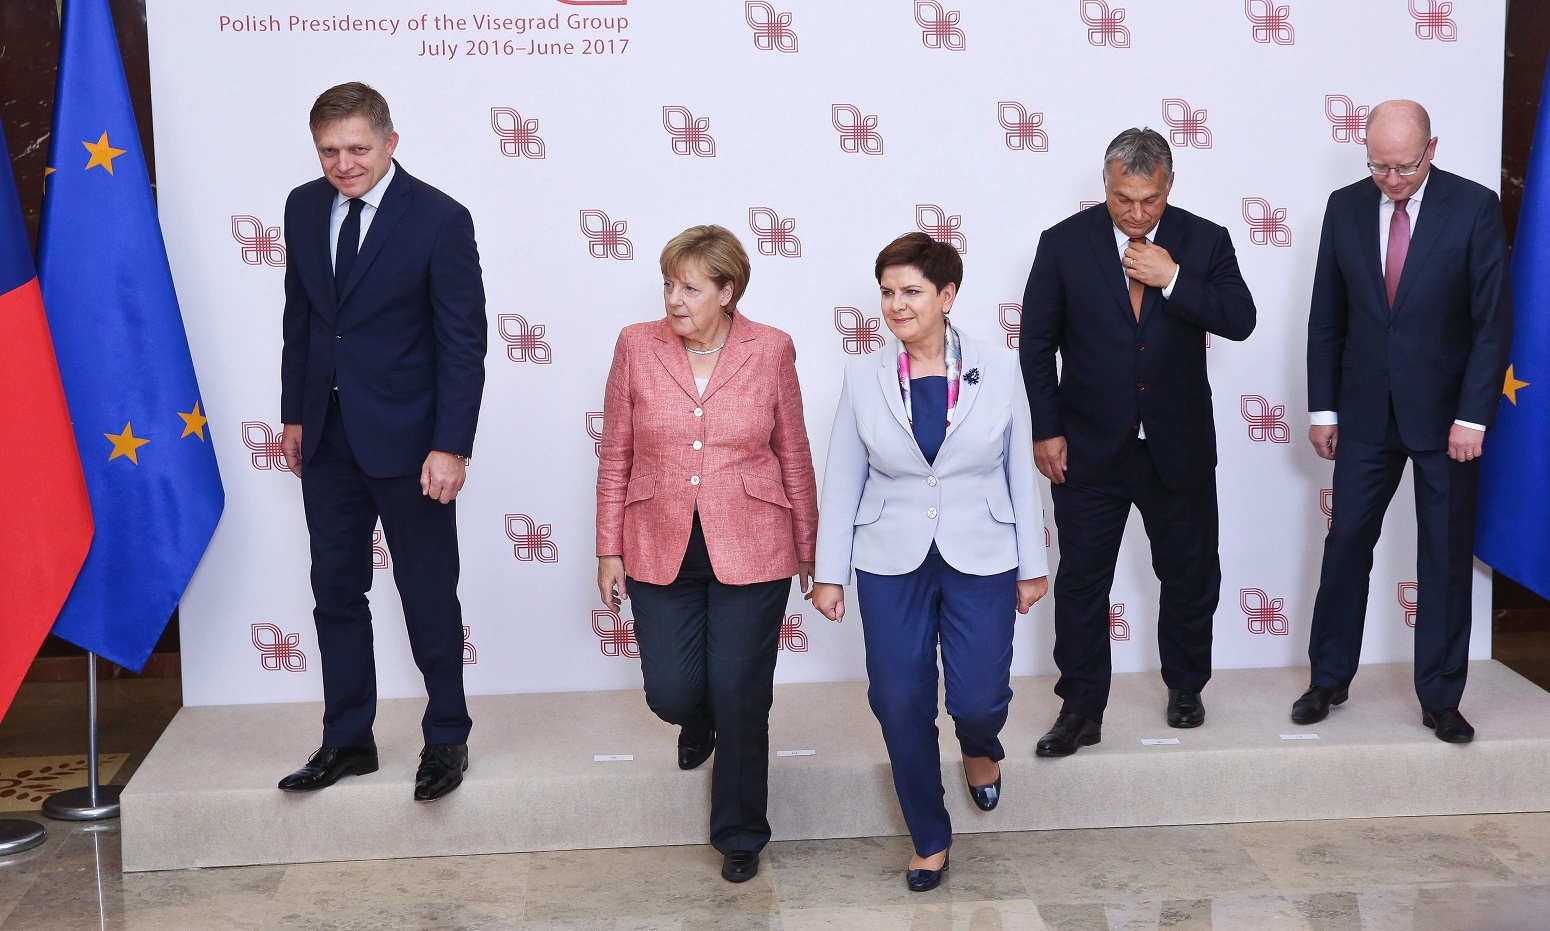 Varsó, 2016. augusztus 26. Robert Fico szlovák kormányfõ, Angela Merkel német kancellár, Beata Szydlo lengyel kormányfõ, Orbán Viktor miniszterelnök és Bohuslav Sobotka cseh kormányfõ (b-j) csoportkép készítése után a visegrádi országok (V4) csúcstalálkozóján Varsóban 2016. augusztus 26-án. A V4-ek vezetõi és Angela Merkel német kancellár az Európai Unió jövõjérõl tárgyal a lengyel fõvárosban. (MTI/PAP/Rafal Guz)